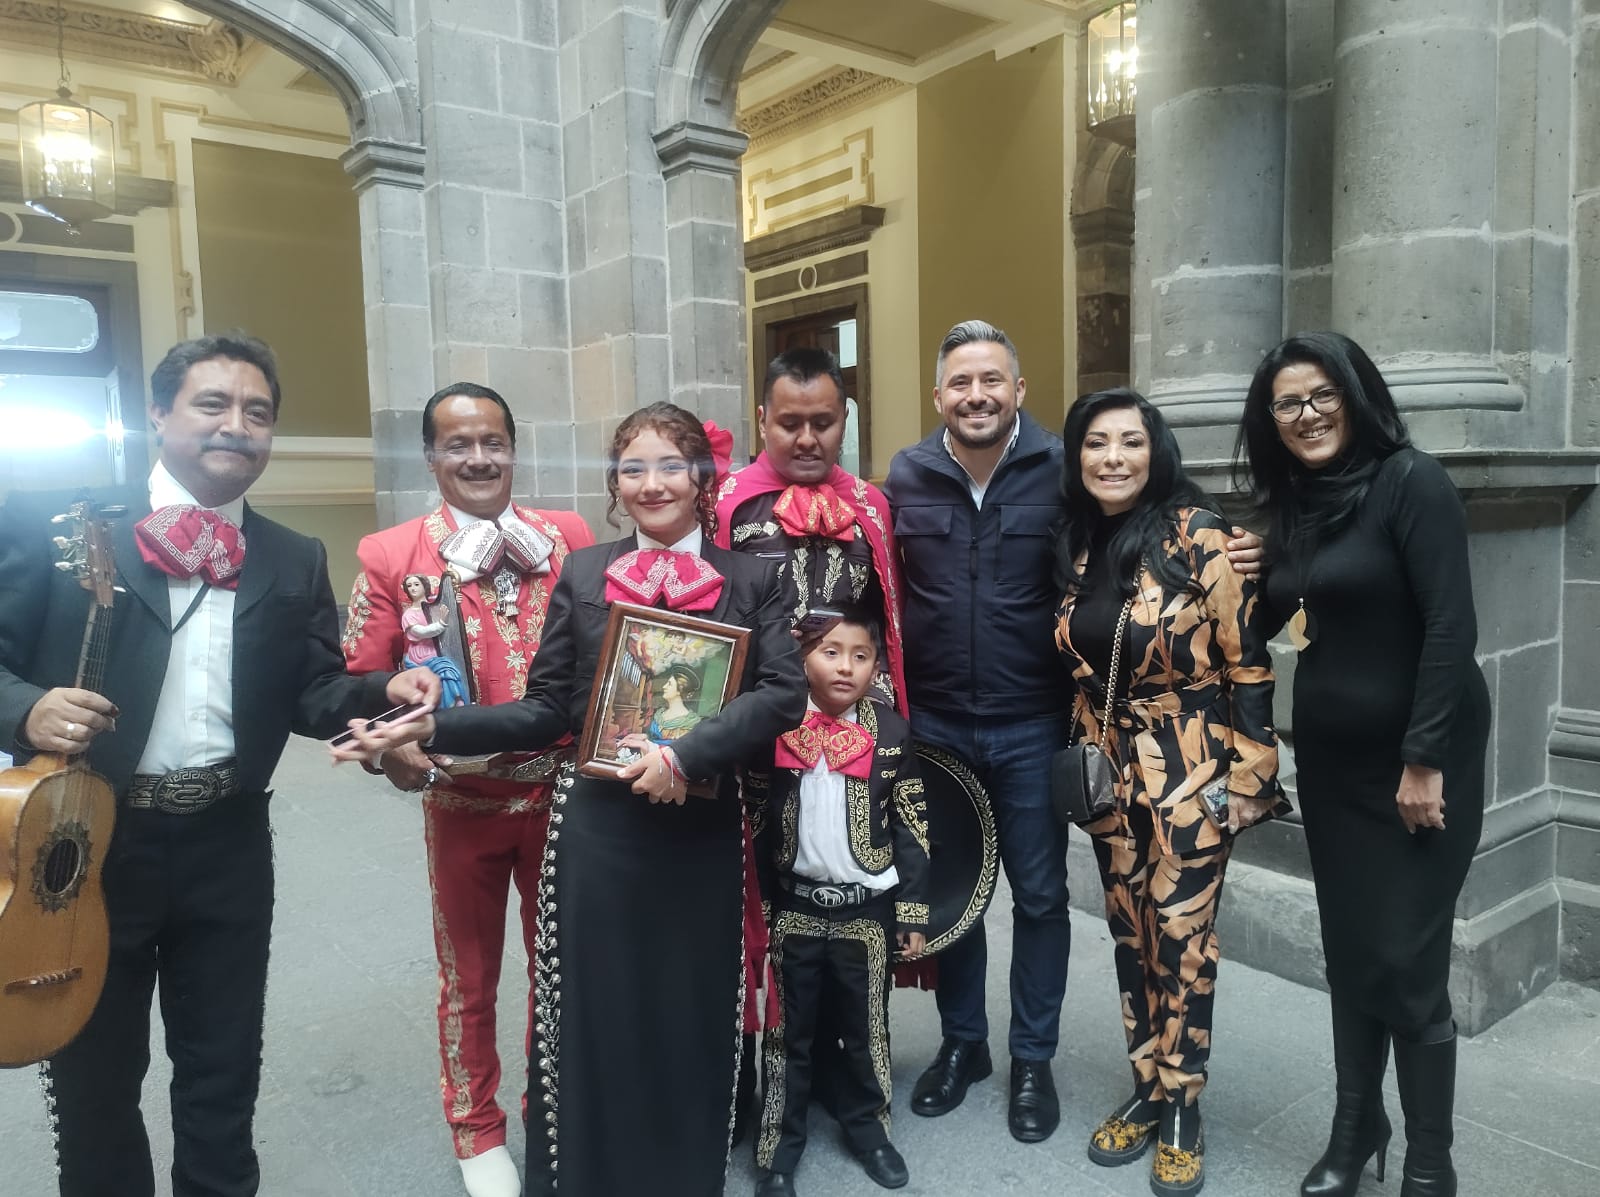 Músicos festejaron a Santa Cecilia en palacio municipal